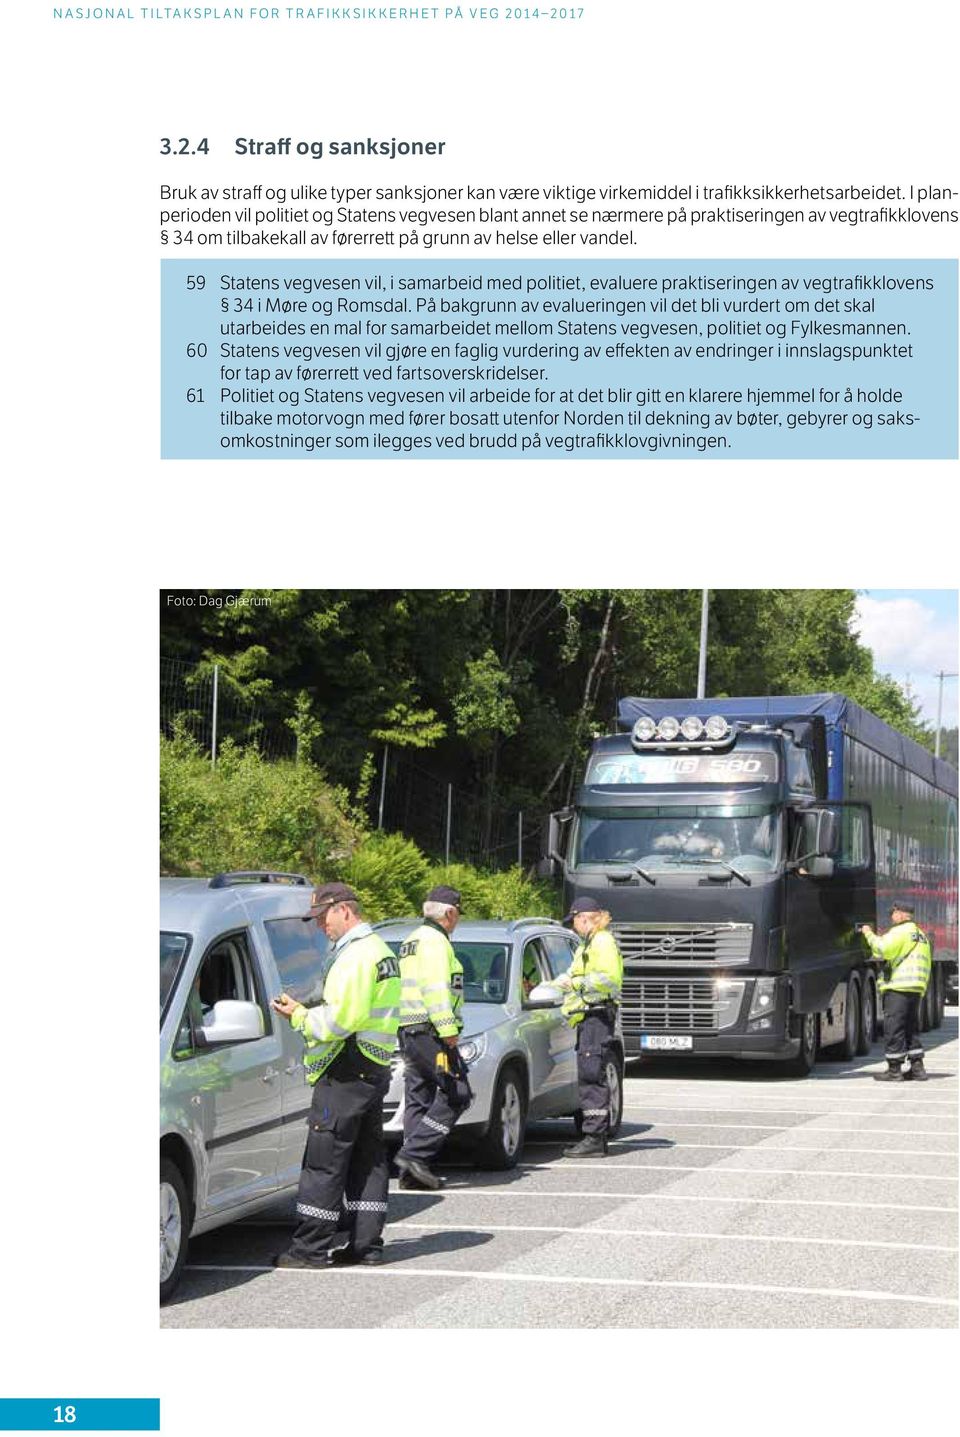 59 Statens vegvesen vil, i samarbeid med politiet, evaluere praktiseringen av vegtrafikklovens 34 i Møre og Romsdal.